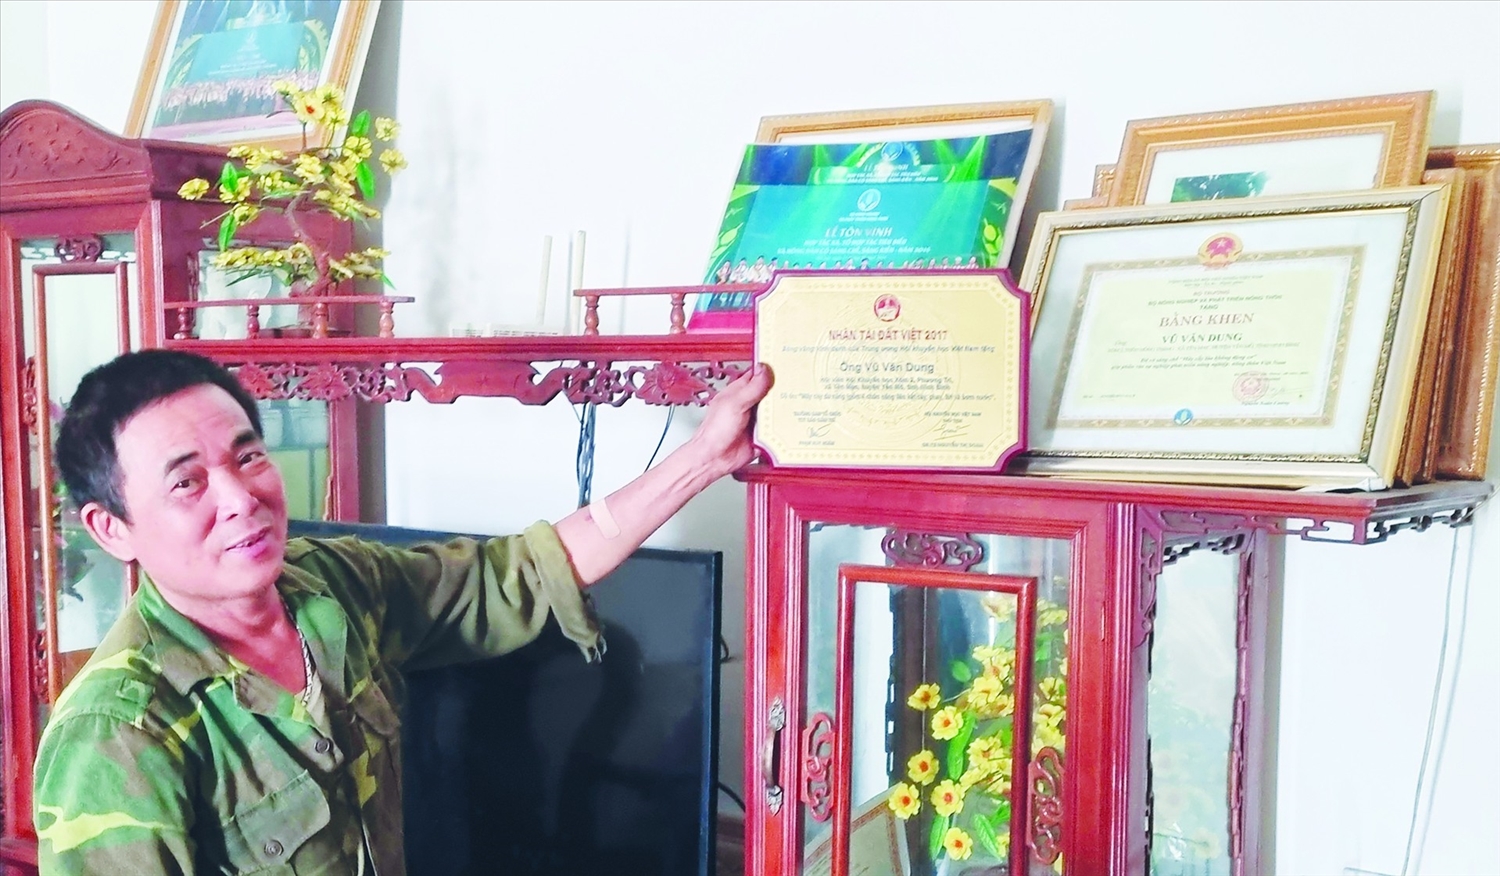 Ông Vũ Văn Dung đạt nhiều giải thưởng cao trong các hội thi cấp tỉnh và toàn quốc về chế tạo máy nông nghiệp giúp nông dân